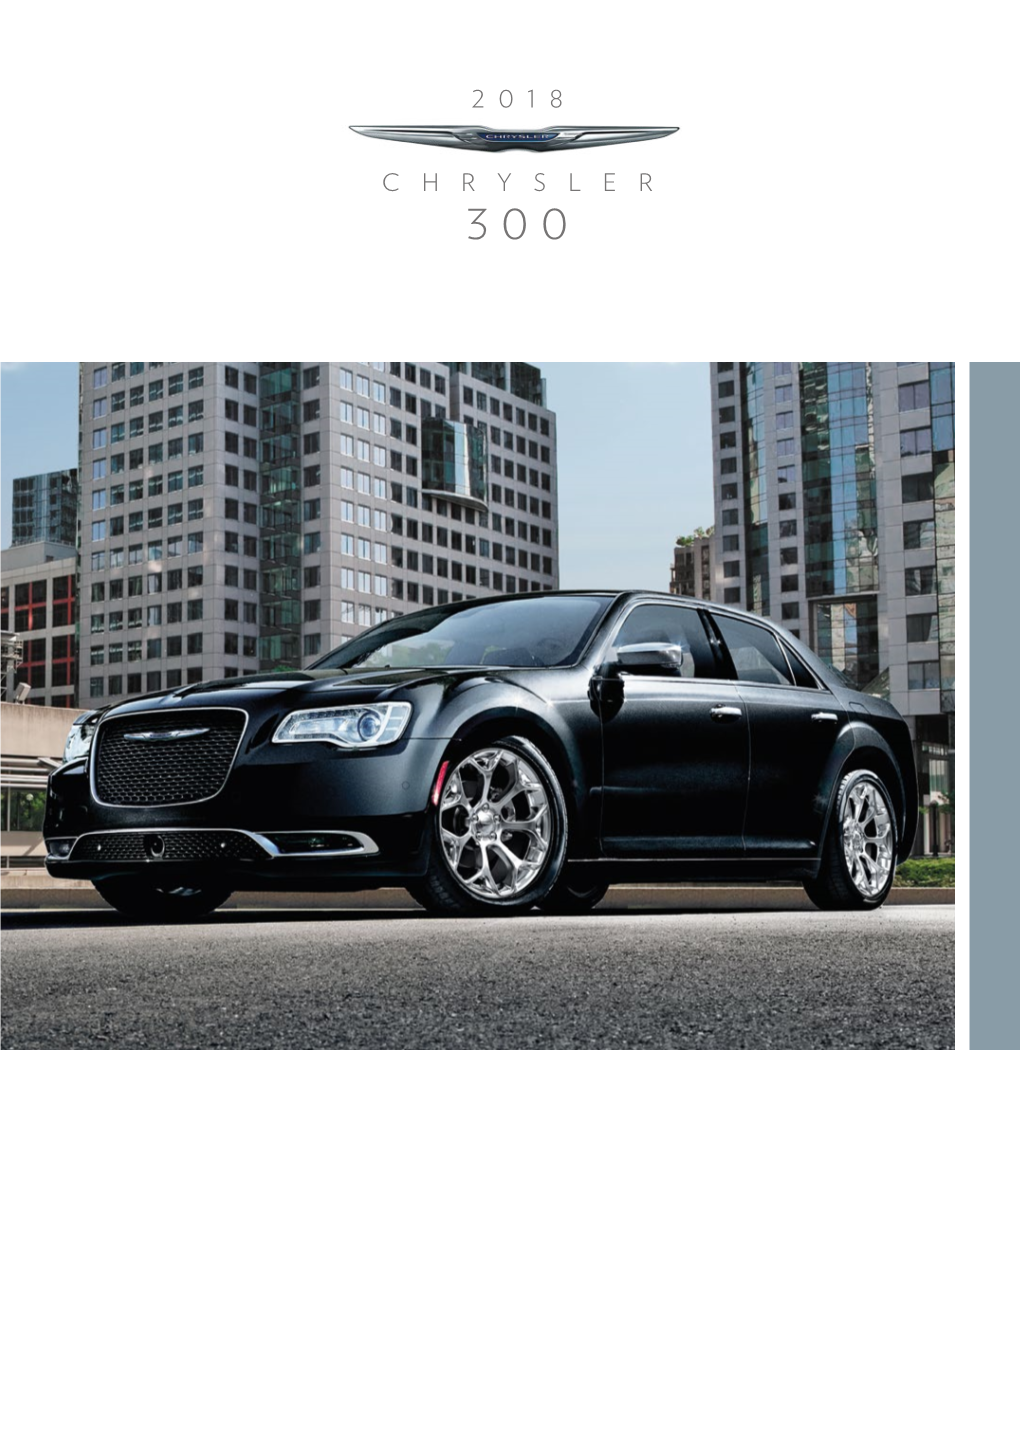 2018 Chrysler 300 Brochure